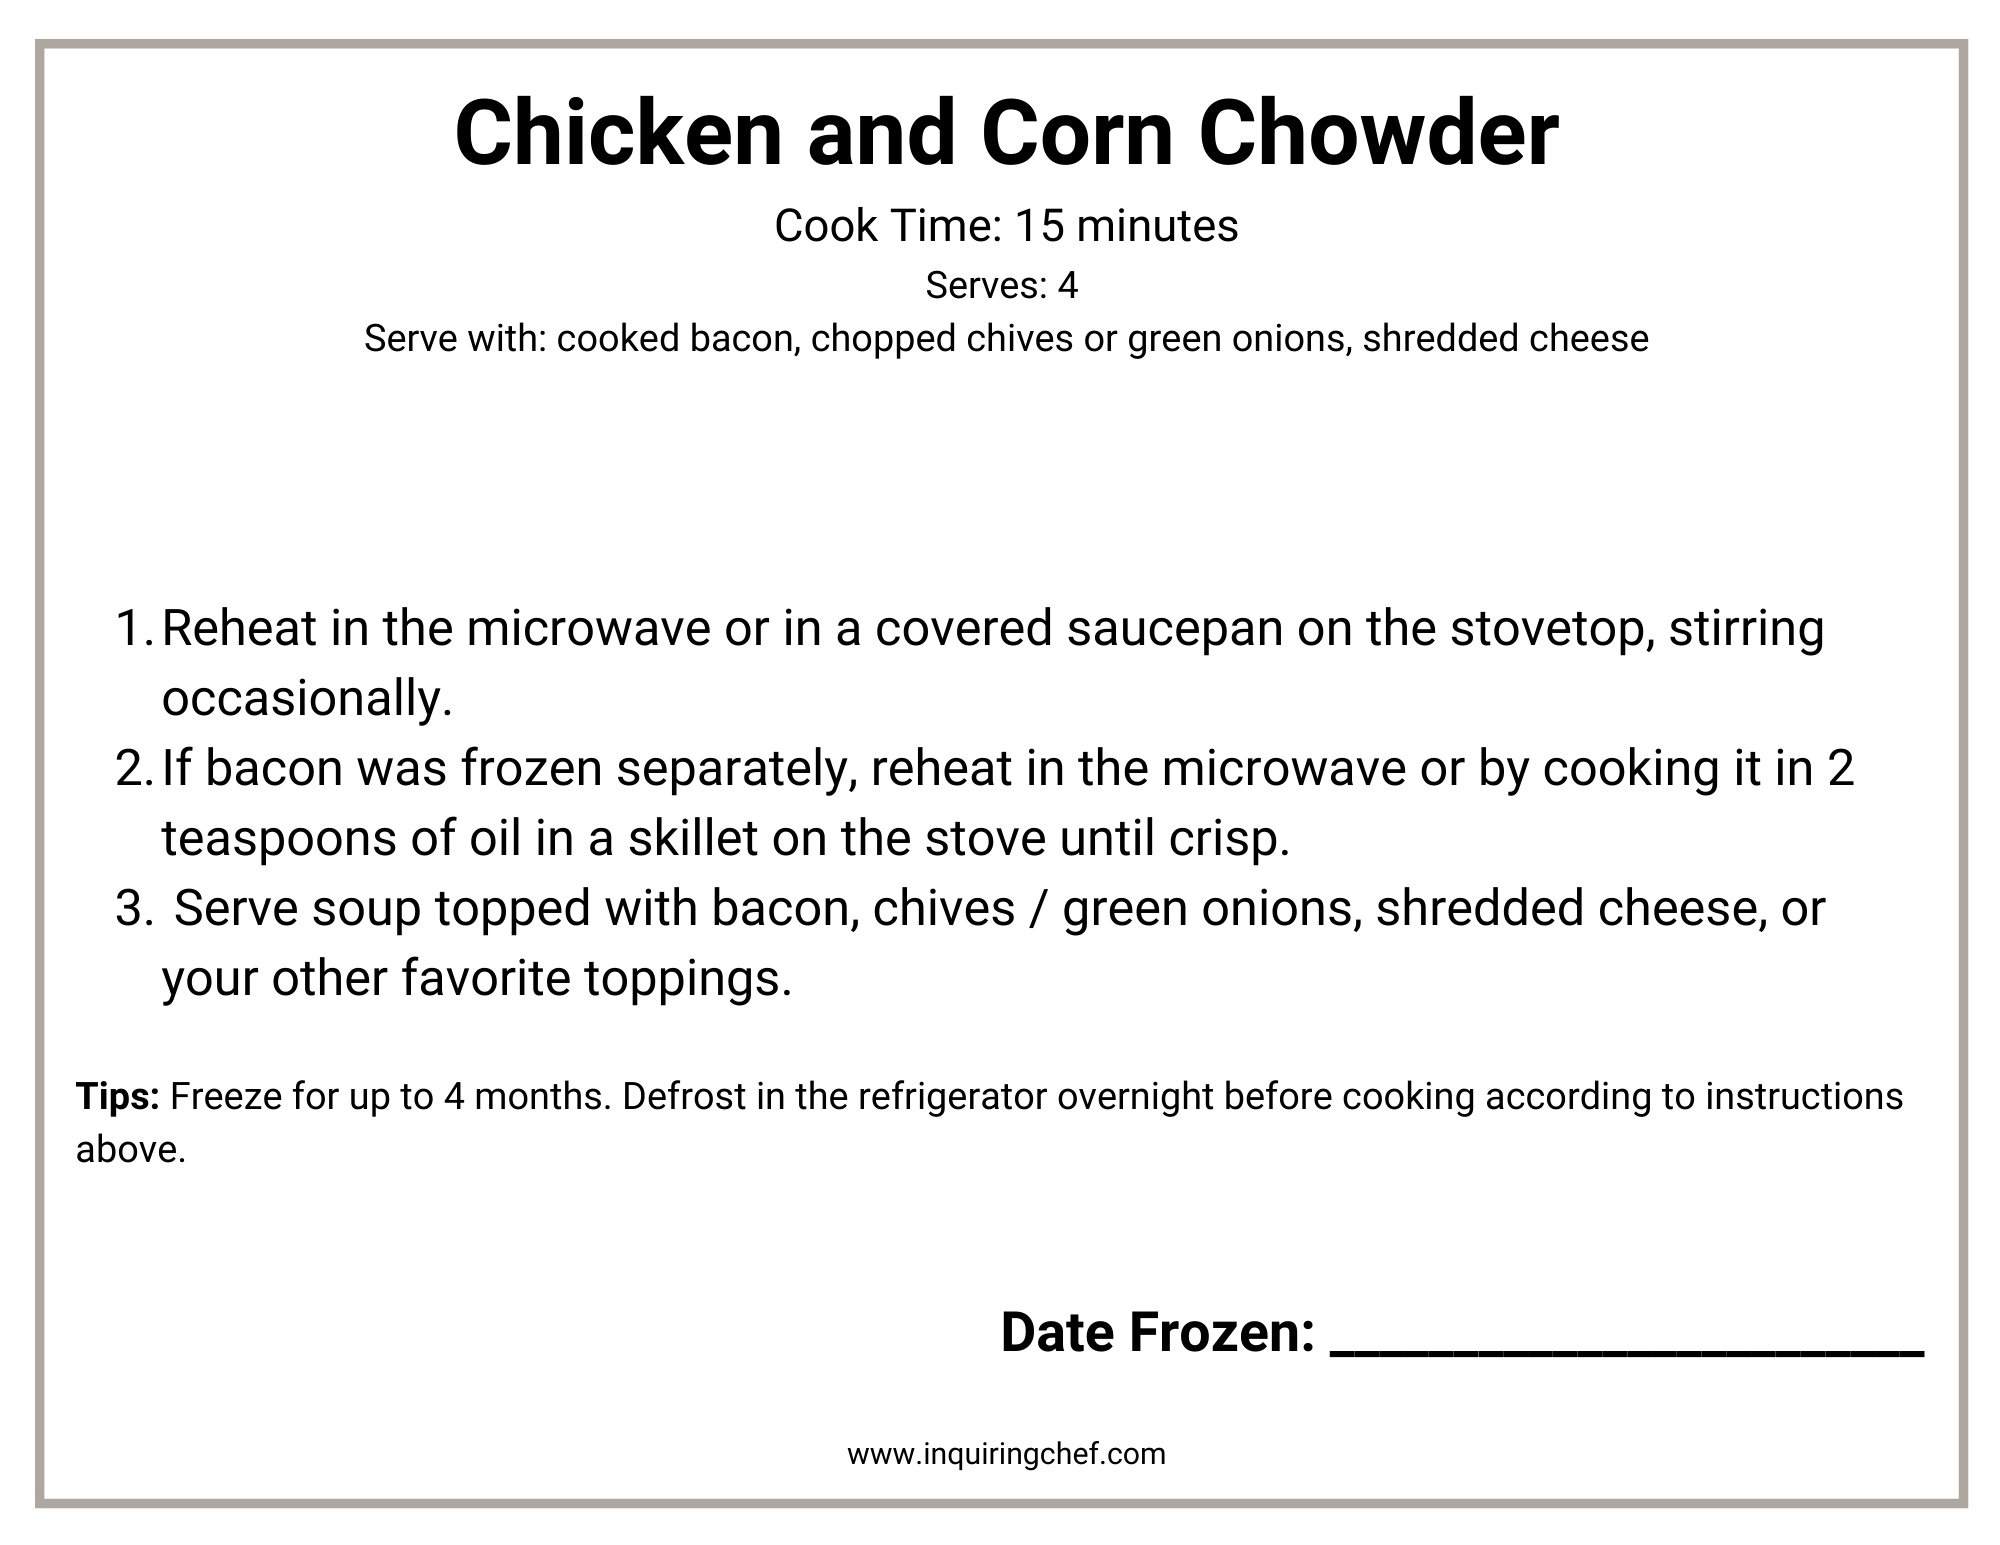 chicken chowder freezer label